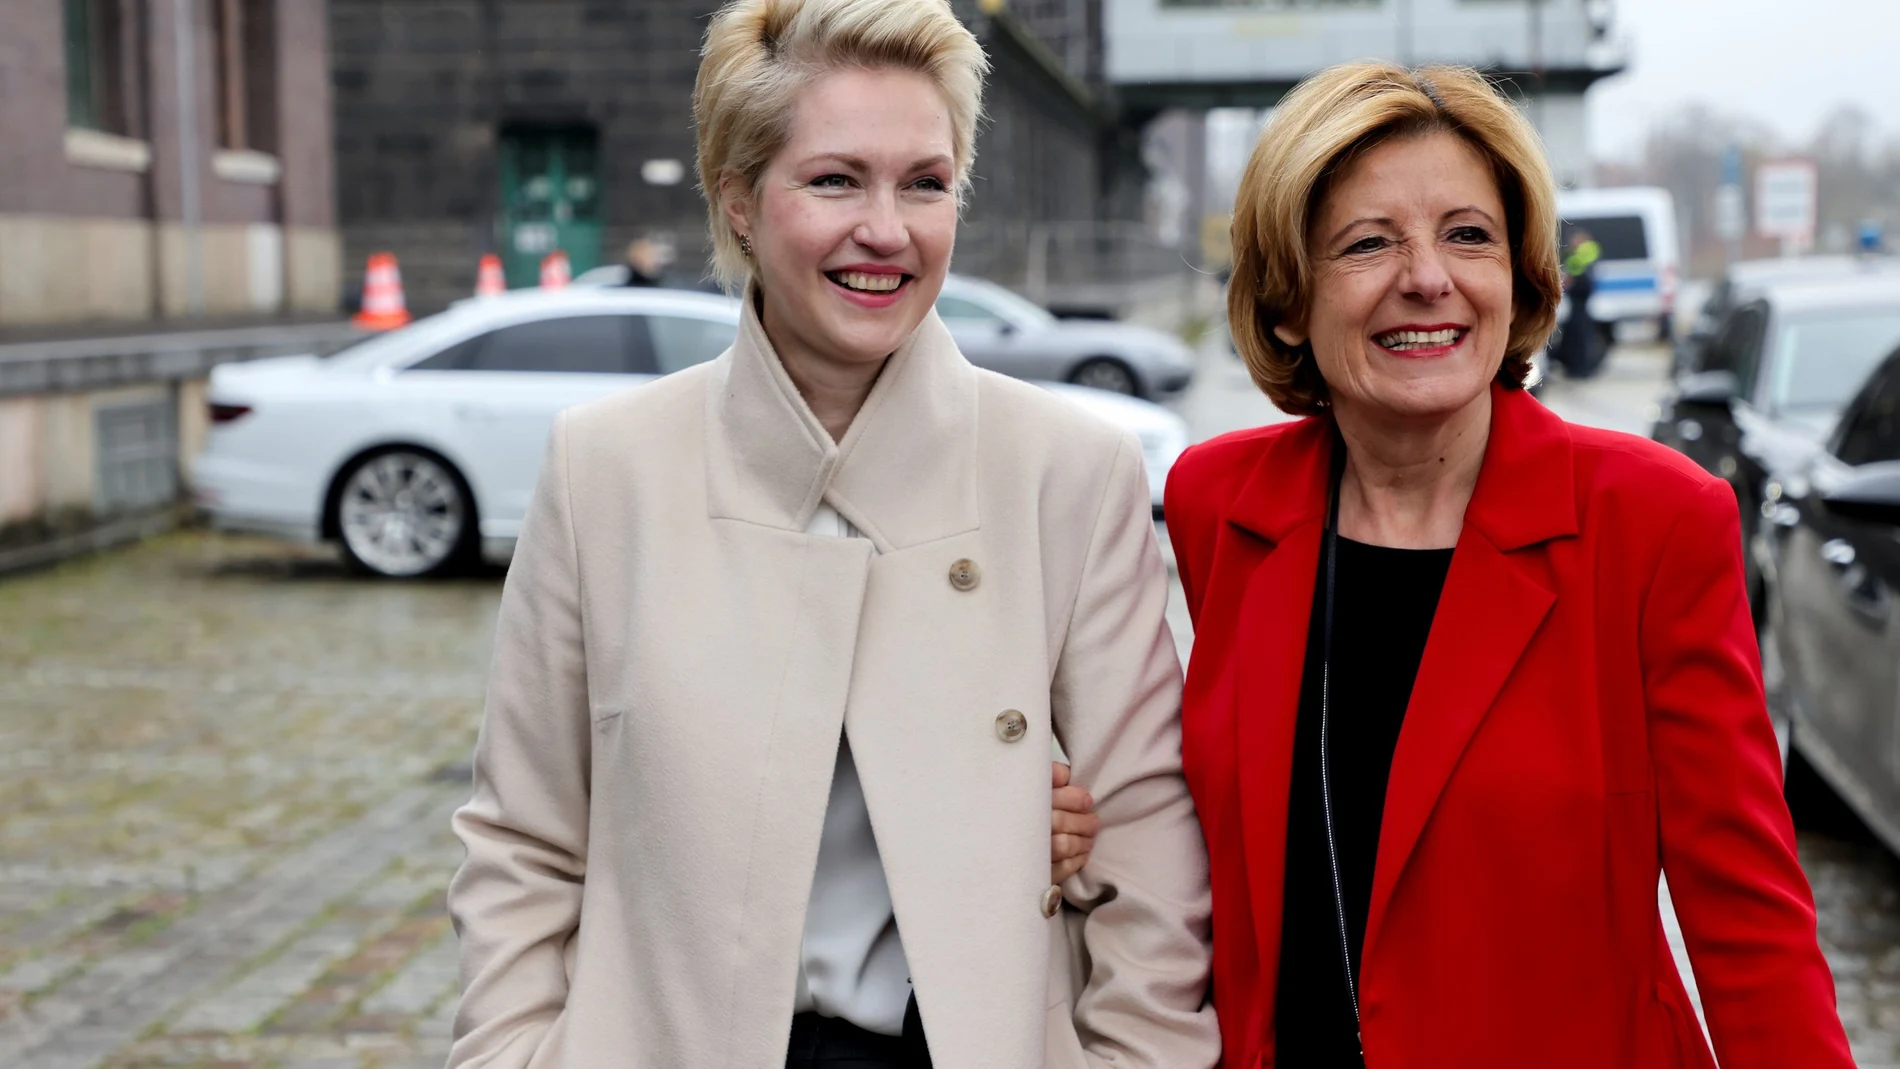 La presidenta de Renania Palatinado, Malu Dreyer, participó en las negociaciones de coalición del Gobierno federal